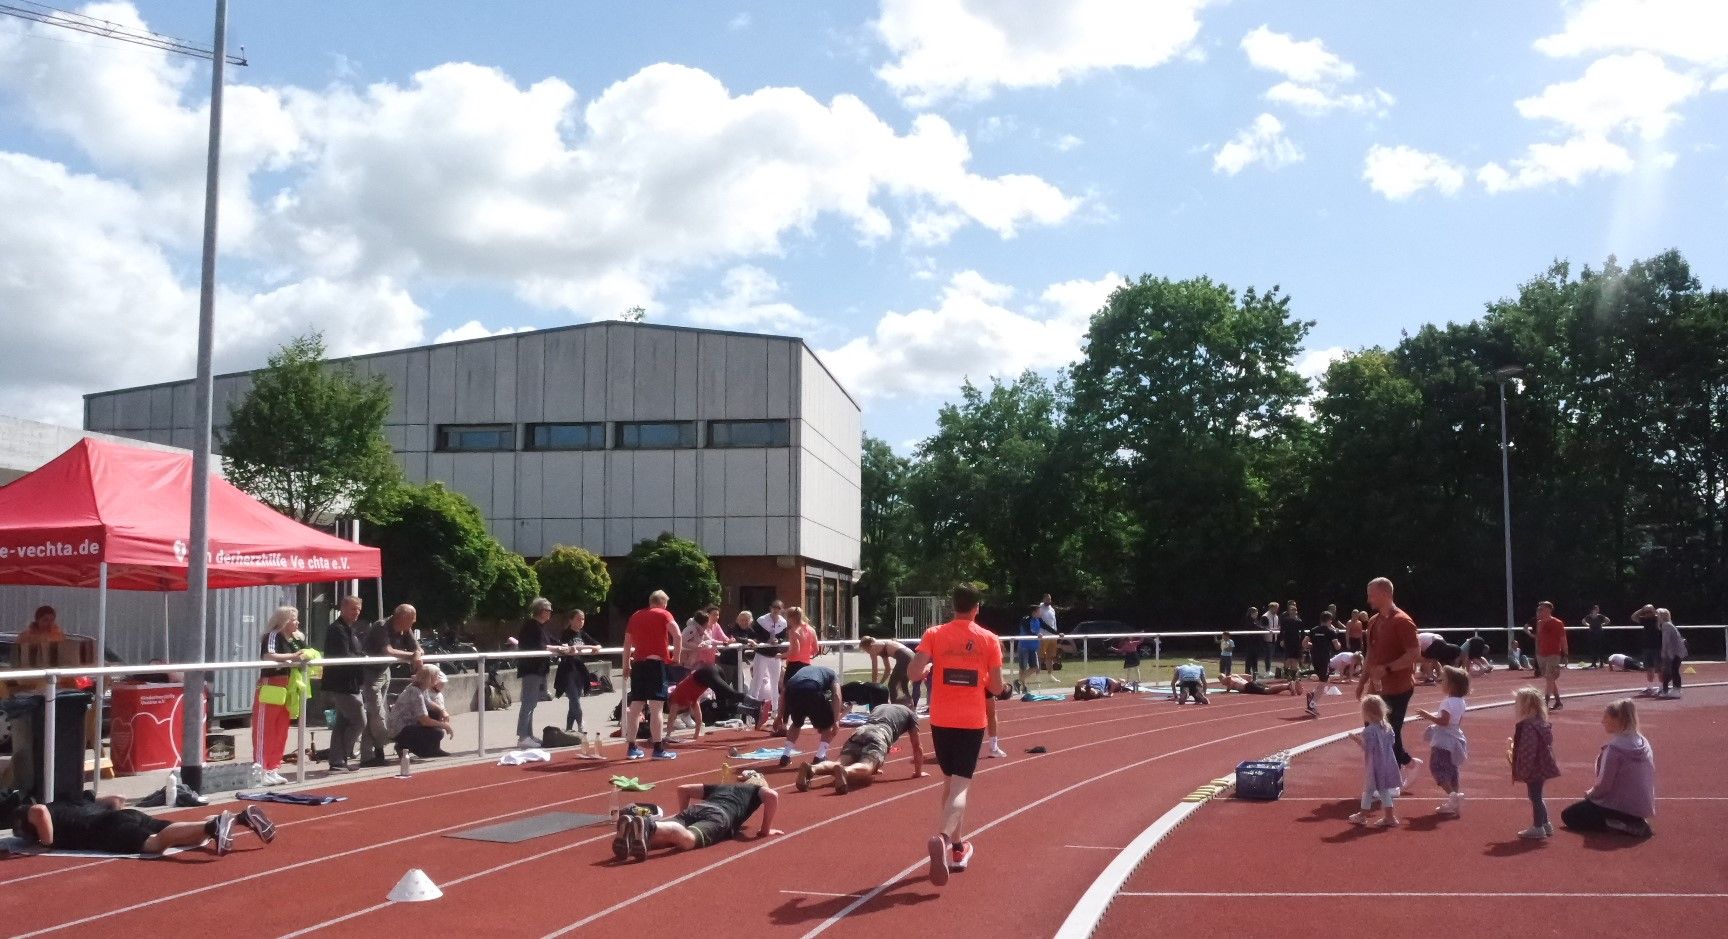 Das Workout auf dem Sportplatz der Universität Vechta hatte es in sich: Die Teilnehmer mussten auf der 8 Kilometer langen Laufstrecke insgesamt 210 Burpees&nbsp;absolvieren. Foto: Dase